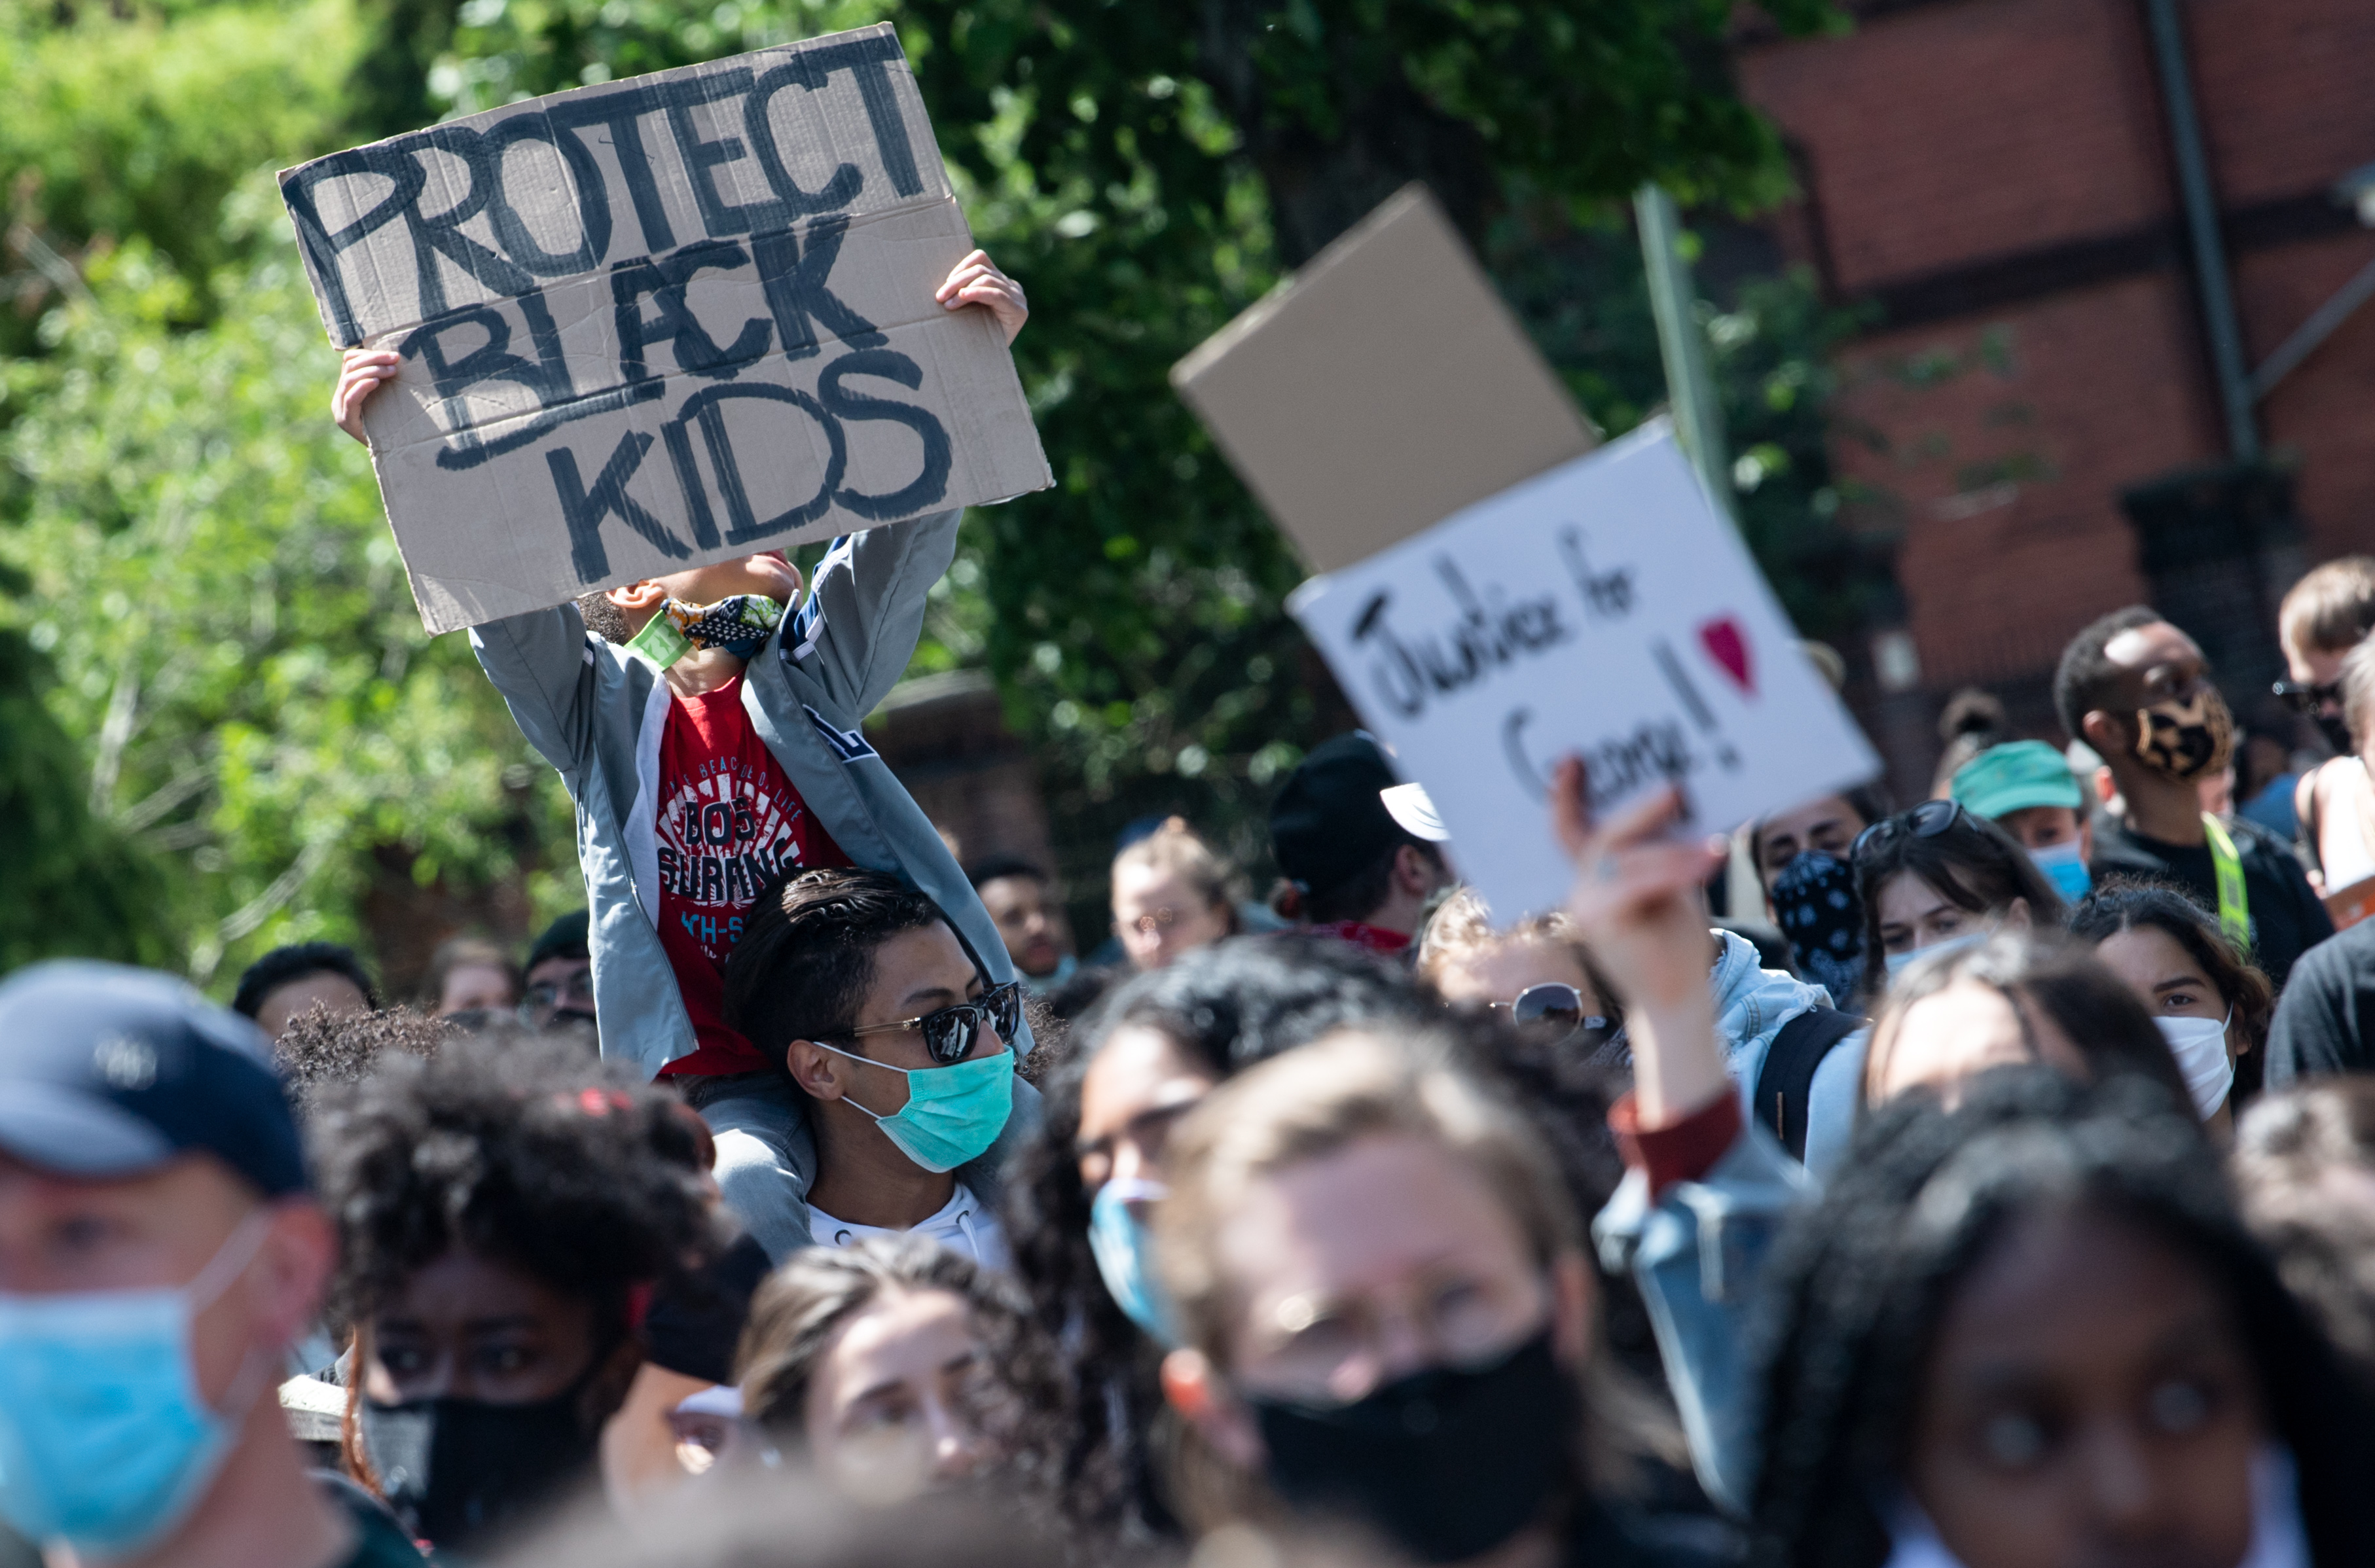 Demonstranten protestieren in Kreuzberg nach dem gewaltsamen Tod von George Floyd durch einen weißen Polizisten in den USA gegen Rassismus und Polizeigewalt, u.a. mit einem Schild "Protect black kids" | dpa